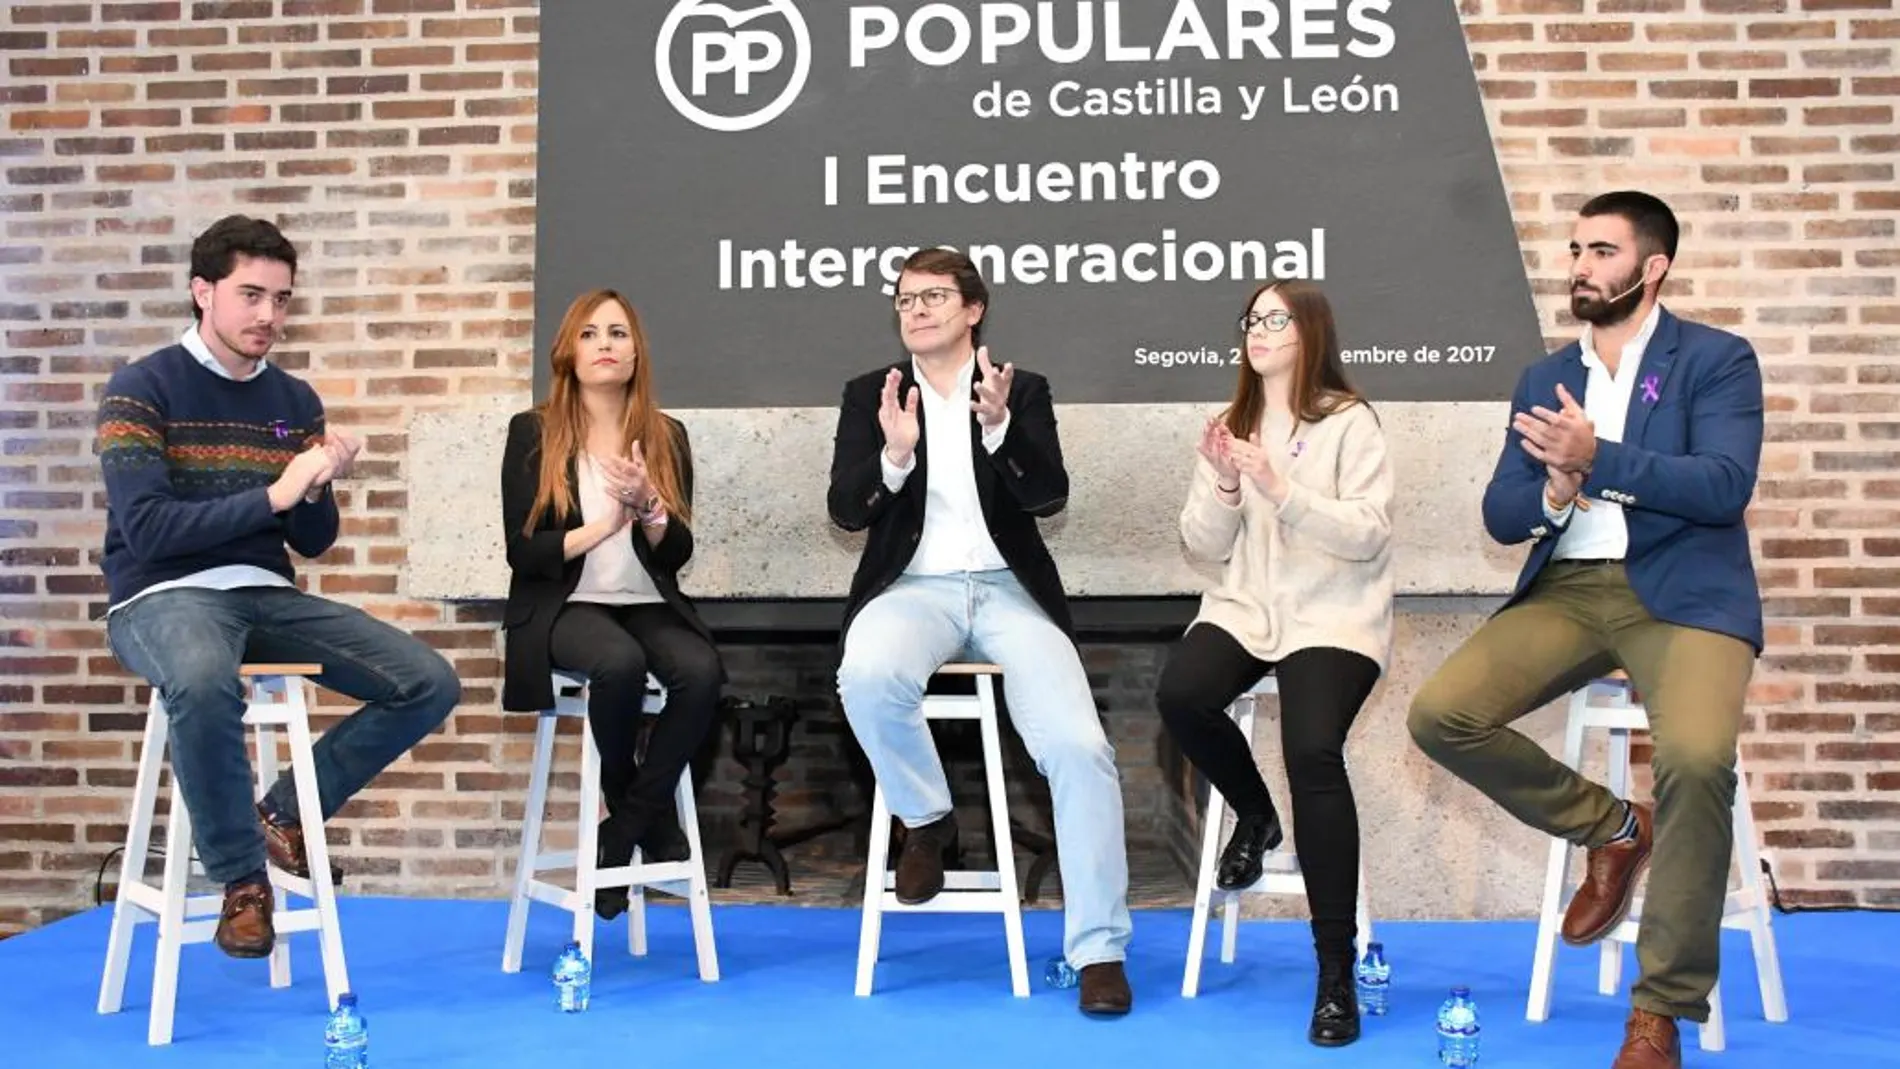 Fernández Mañueco contesta a las preguntas de los jóvenes participantes en el encuentro intergeneracional del PP